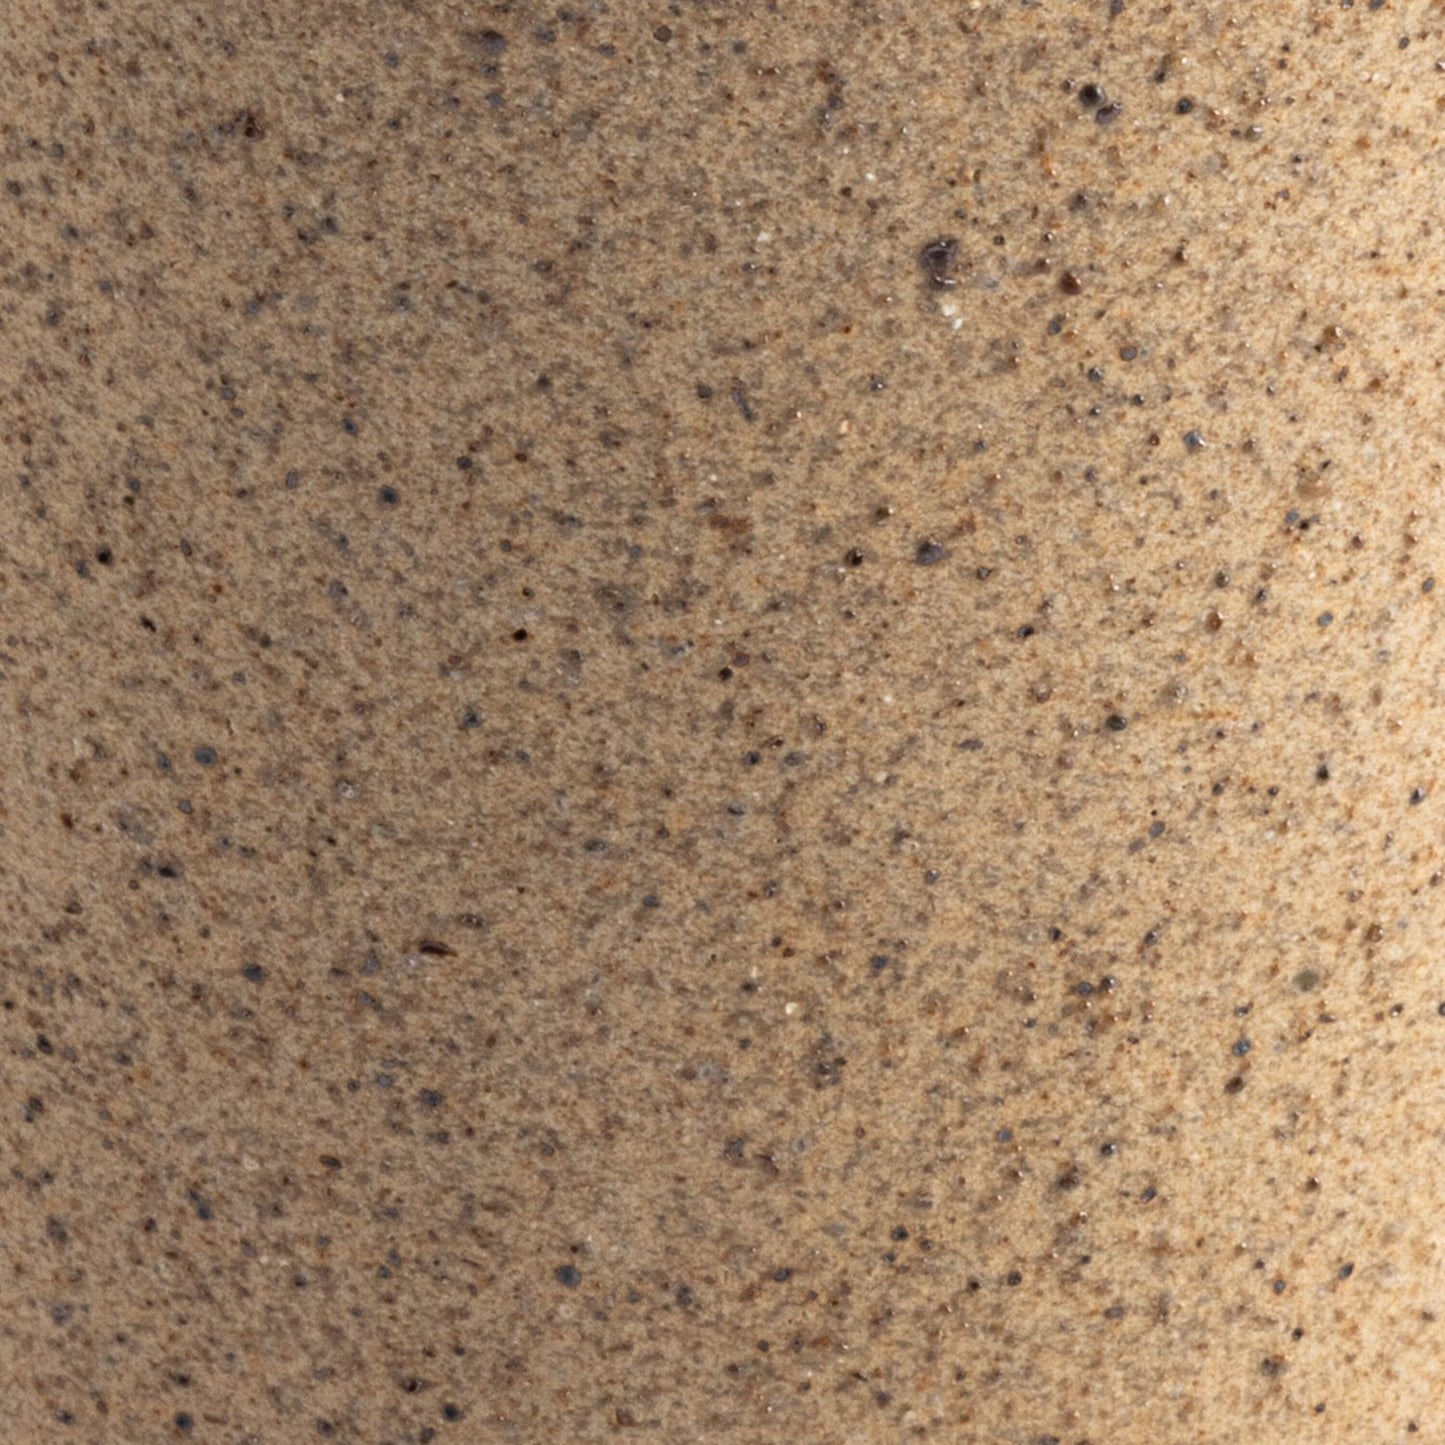 Nelo tumbler, set of 4-natural speckled